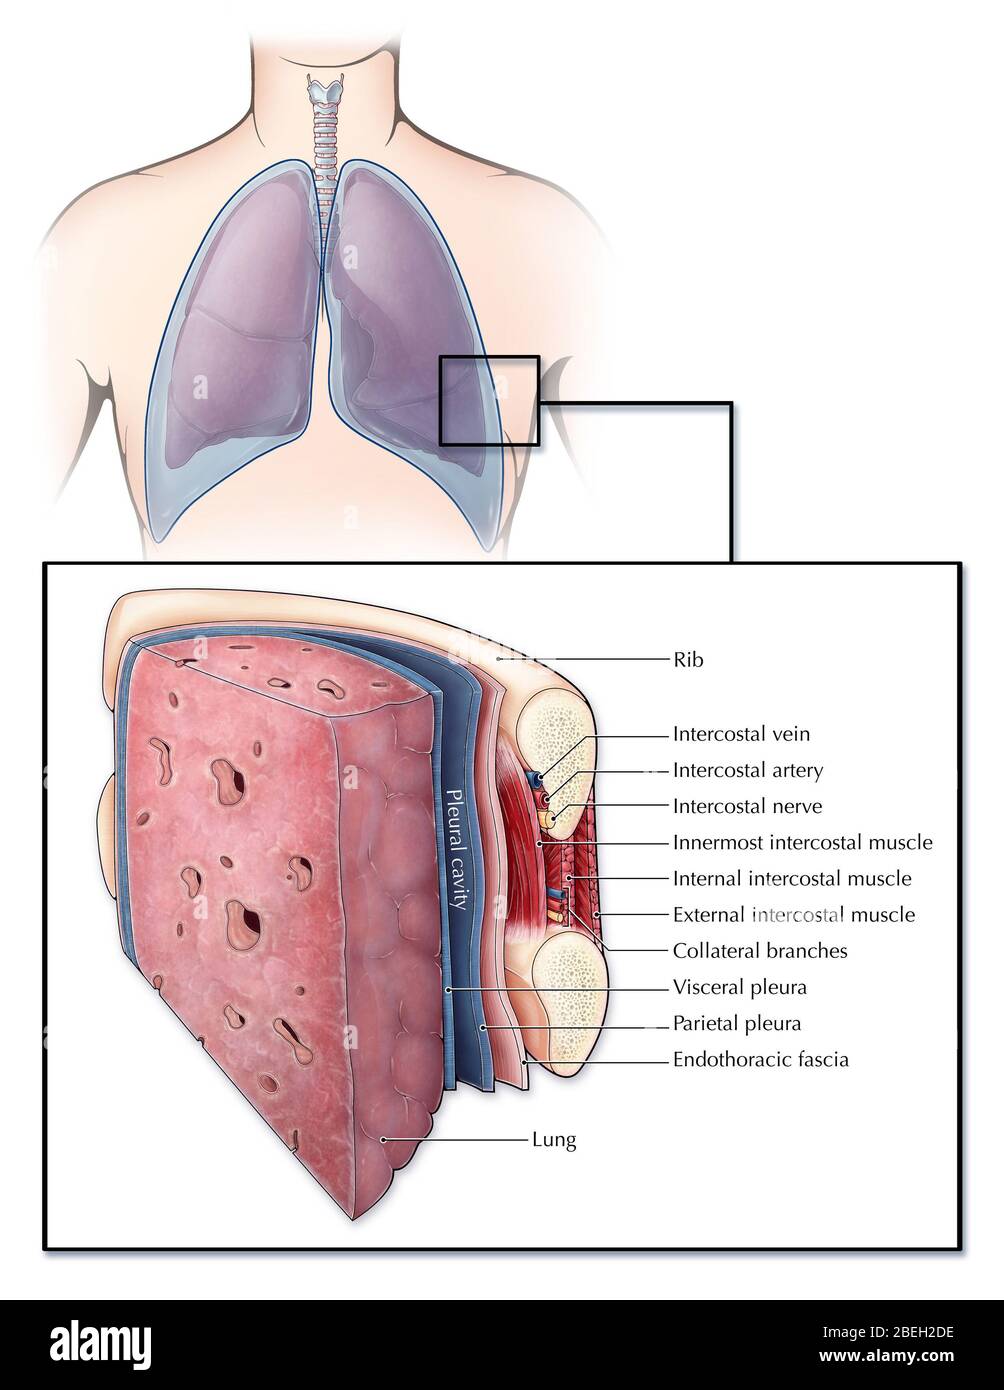 Une section illustrée d'un poumon et de la cage thoracique présentant différentes couches de tissu et de muscle. La plèvre (bleue) est une membrane séreuse couvrant les poumons (plèvre viscérale) et la paroi thoracique (plèvre pariétale), créant un espace rempli de fluide (cavité pleurale) qui lubrifie les poumons pour faciliter la respiration. Entre chaque nervure se trouvent une série de muscles intercostaux, artères, veines et nerfs. Une couche de fascia endothoracique ligne également la surface interne de la cage thoracique. Banque D'Images